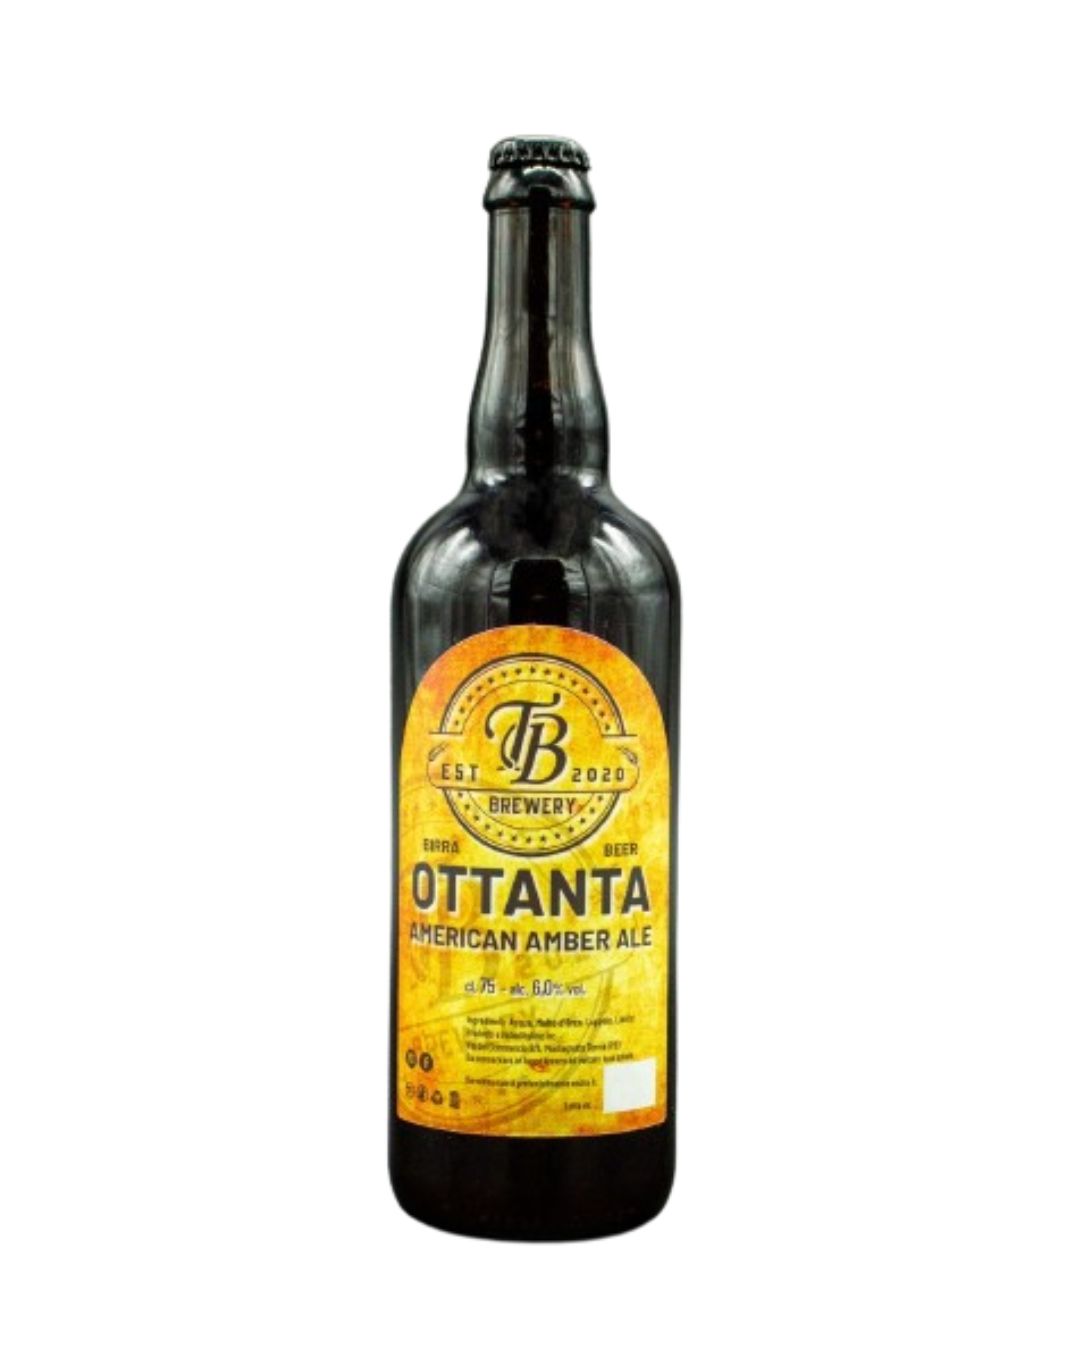 Ottanta - American Amber Vol. 6% - TB Brewery